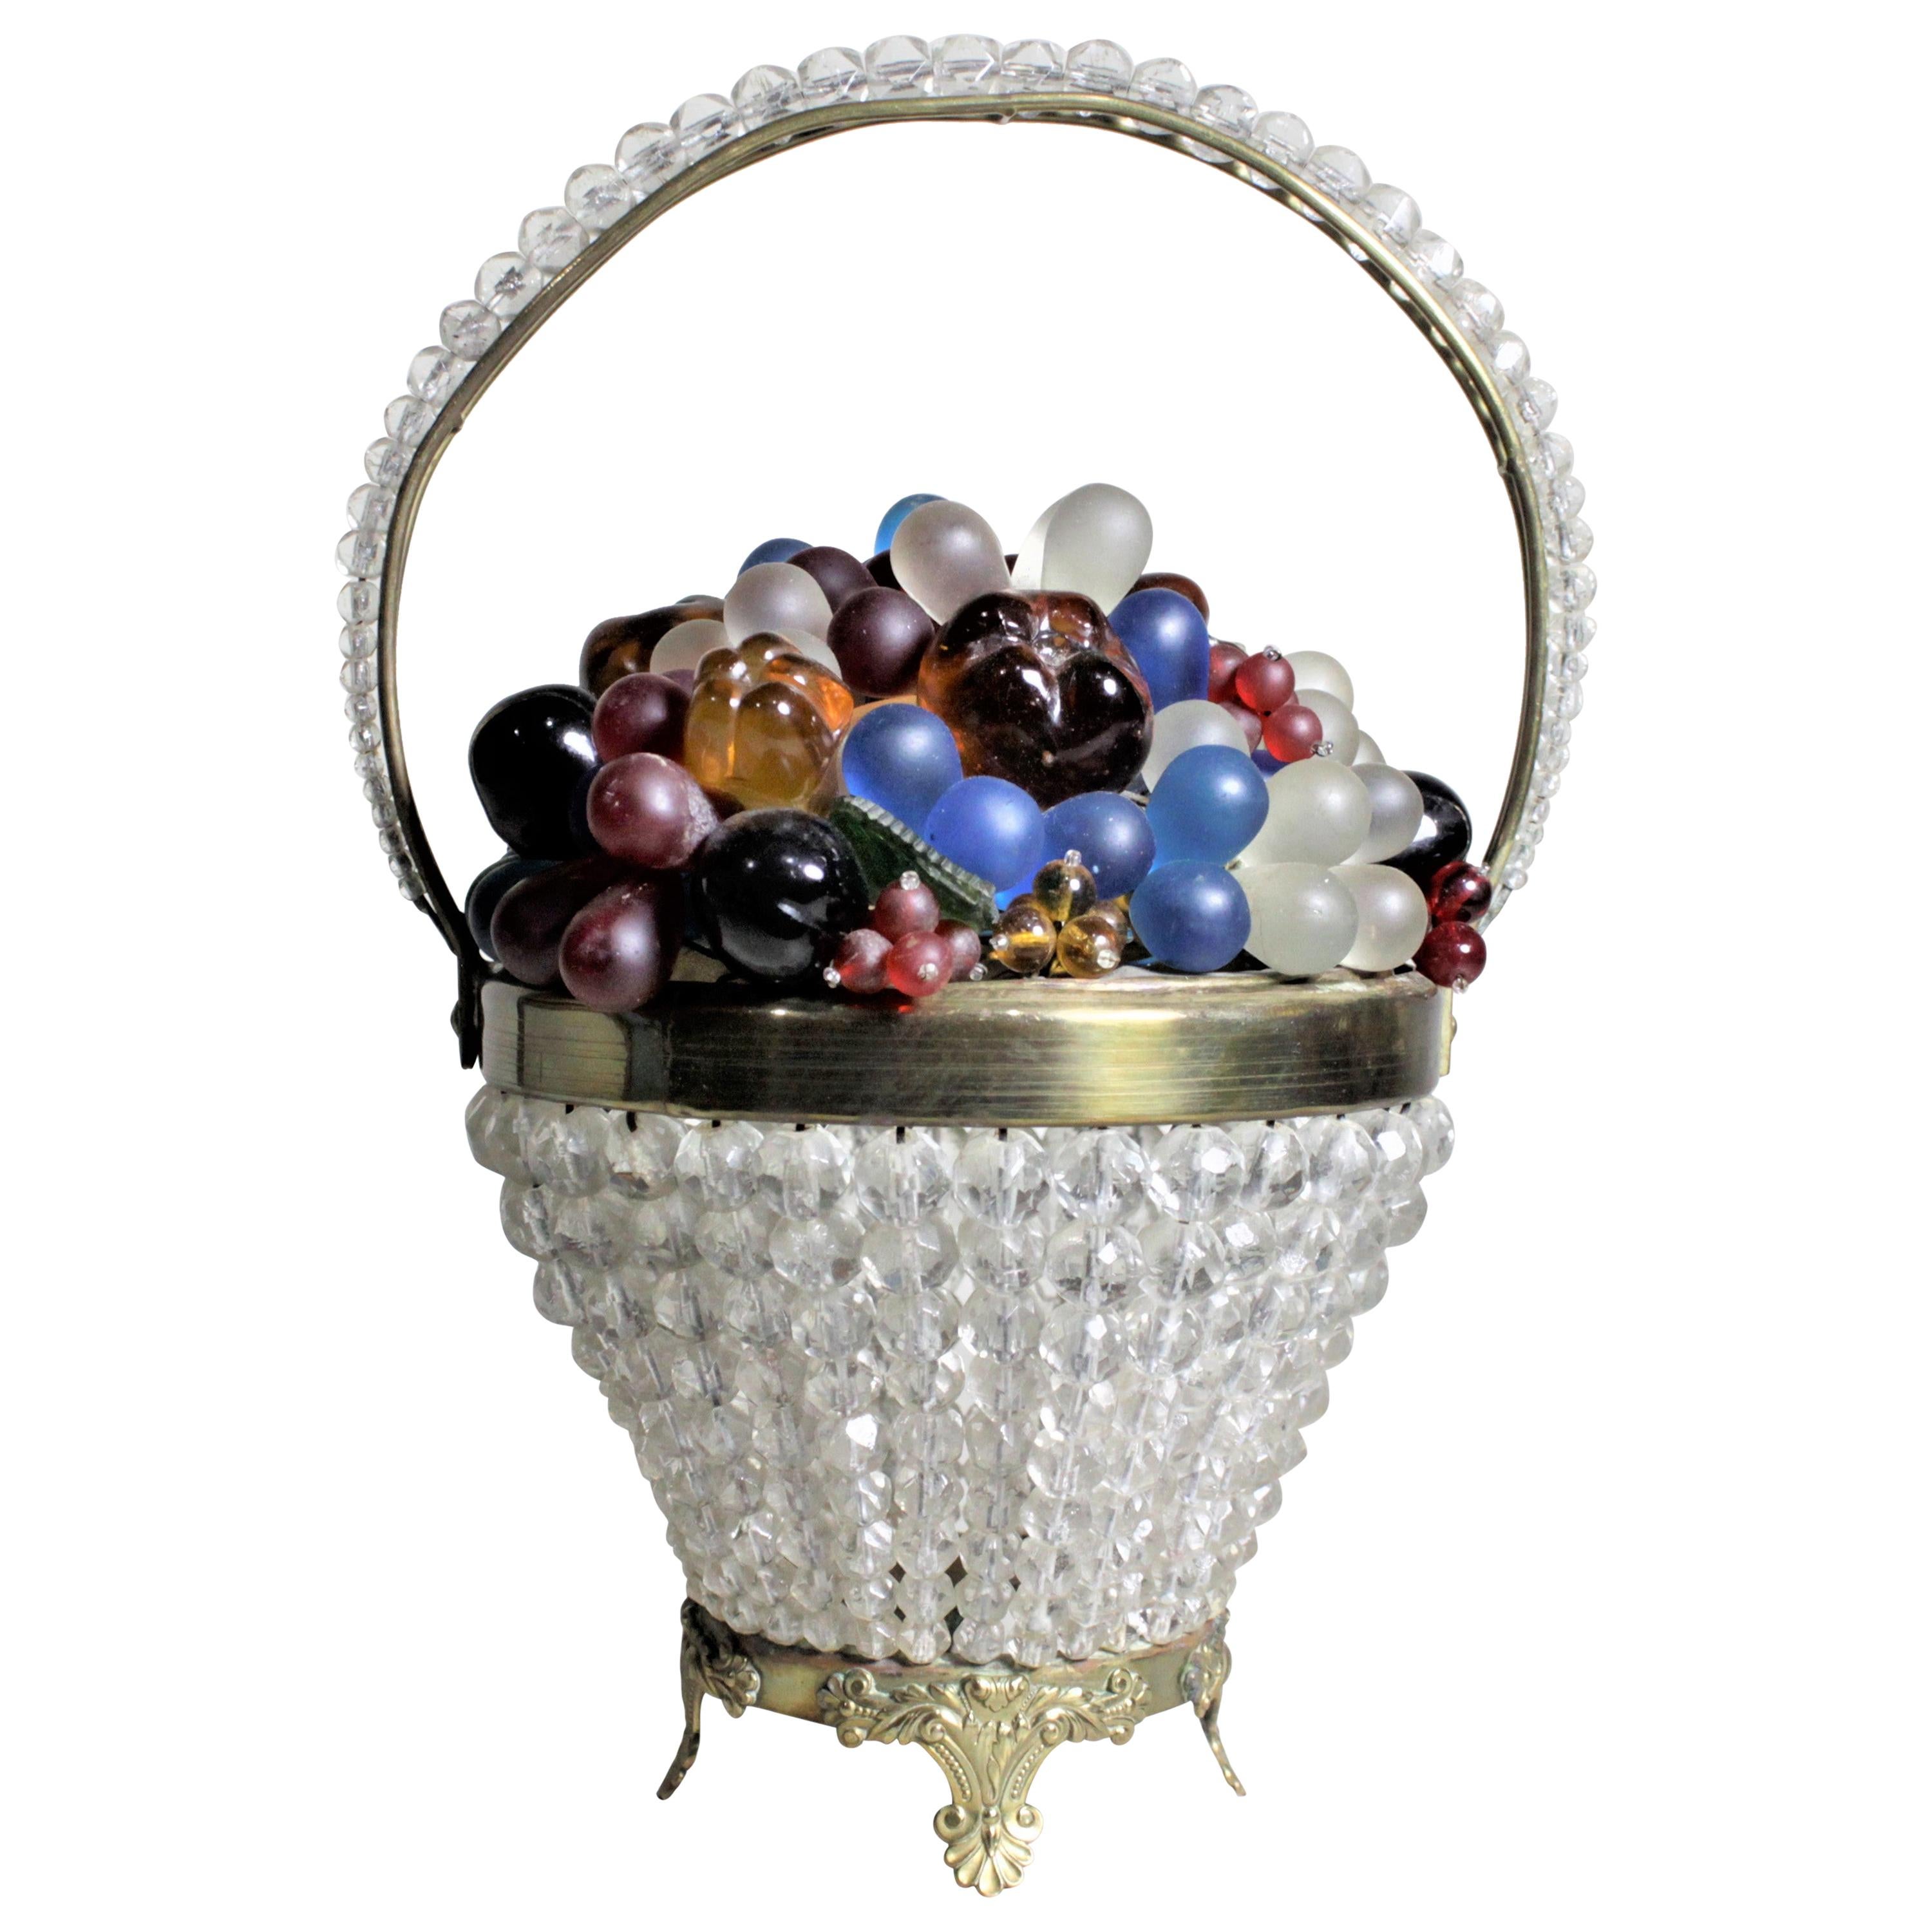 Tschechische figurale Obst- und Blumenkorb-Lampe oder Akzentleuchte aus Kunstglas